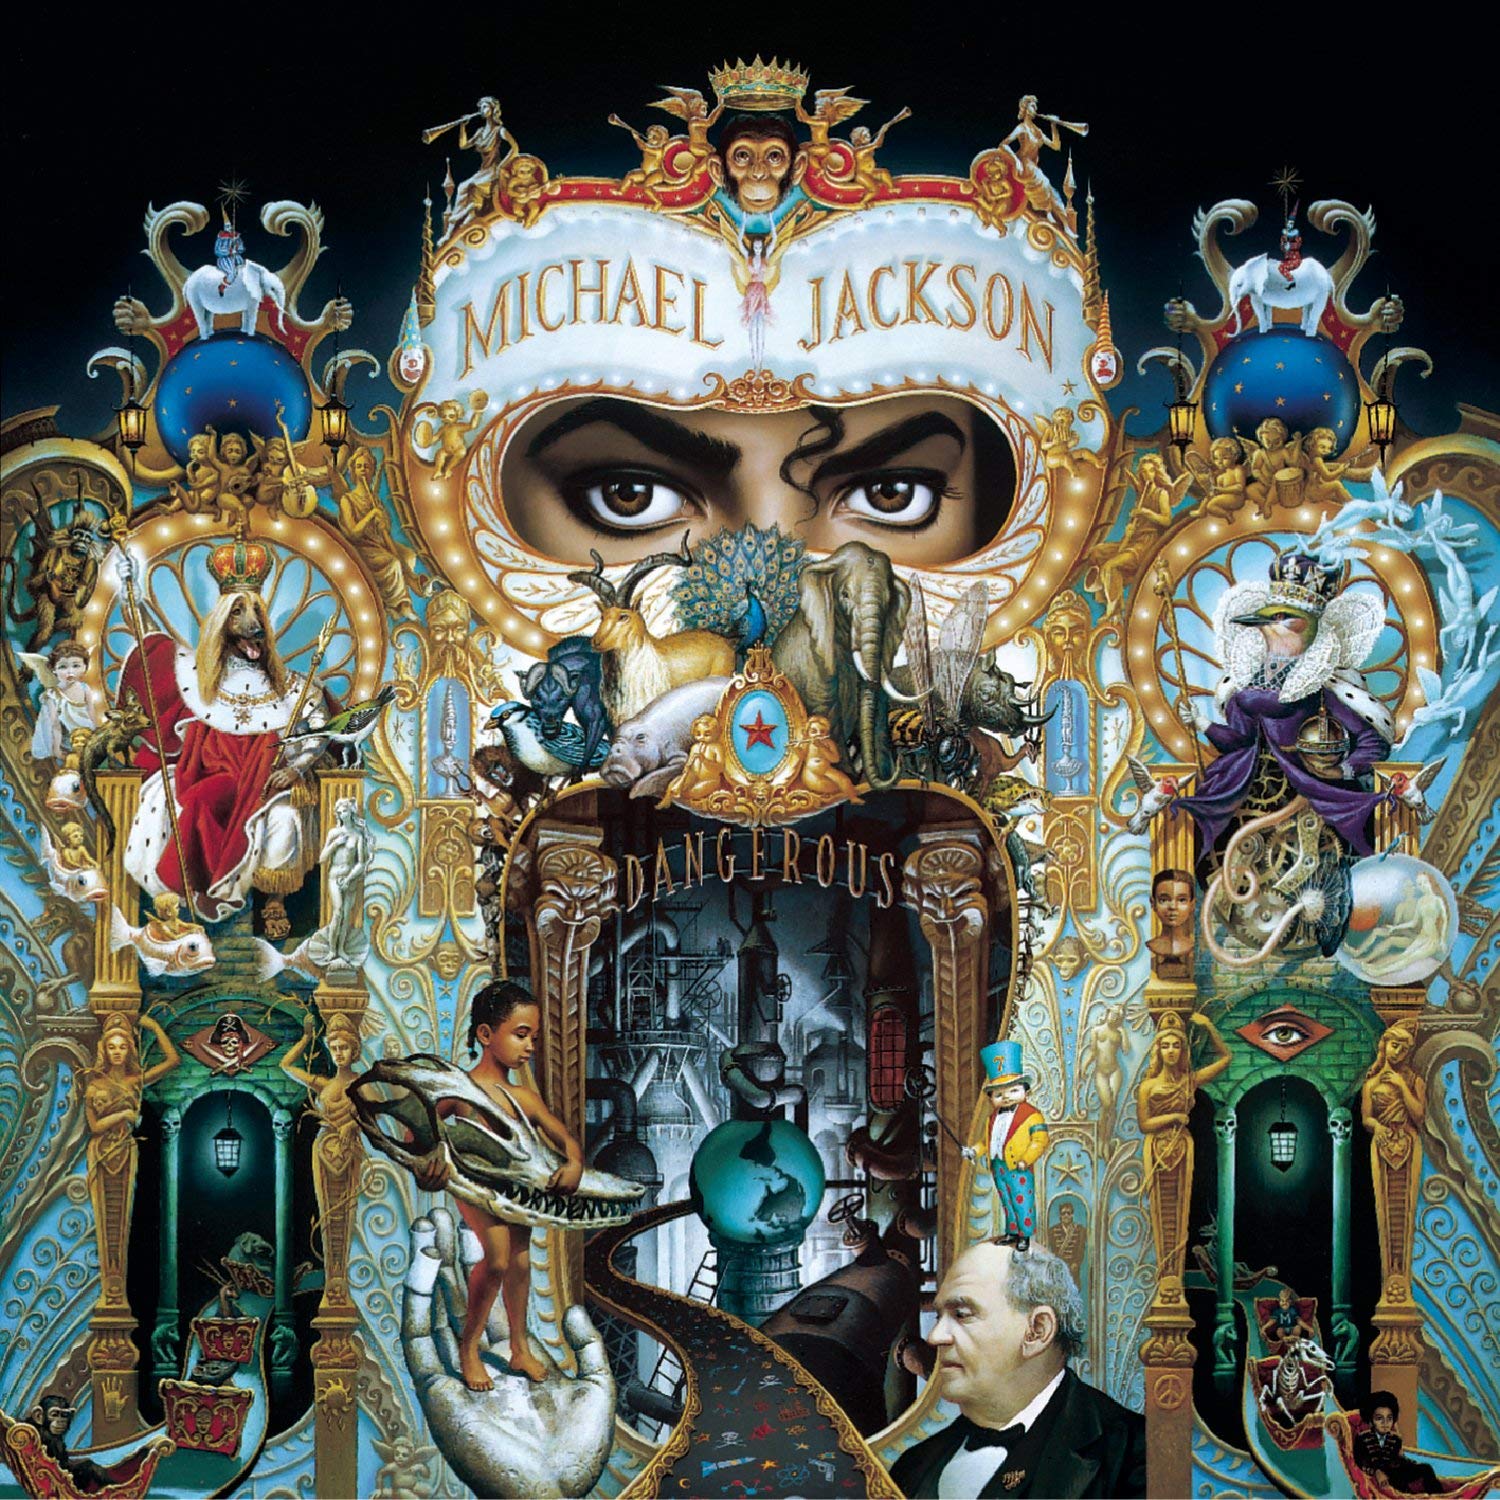 Michael Jackson “Dangerous” (1991) avec Greg Cook (2HDP/Culture 2000)